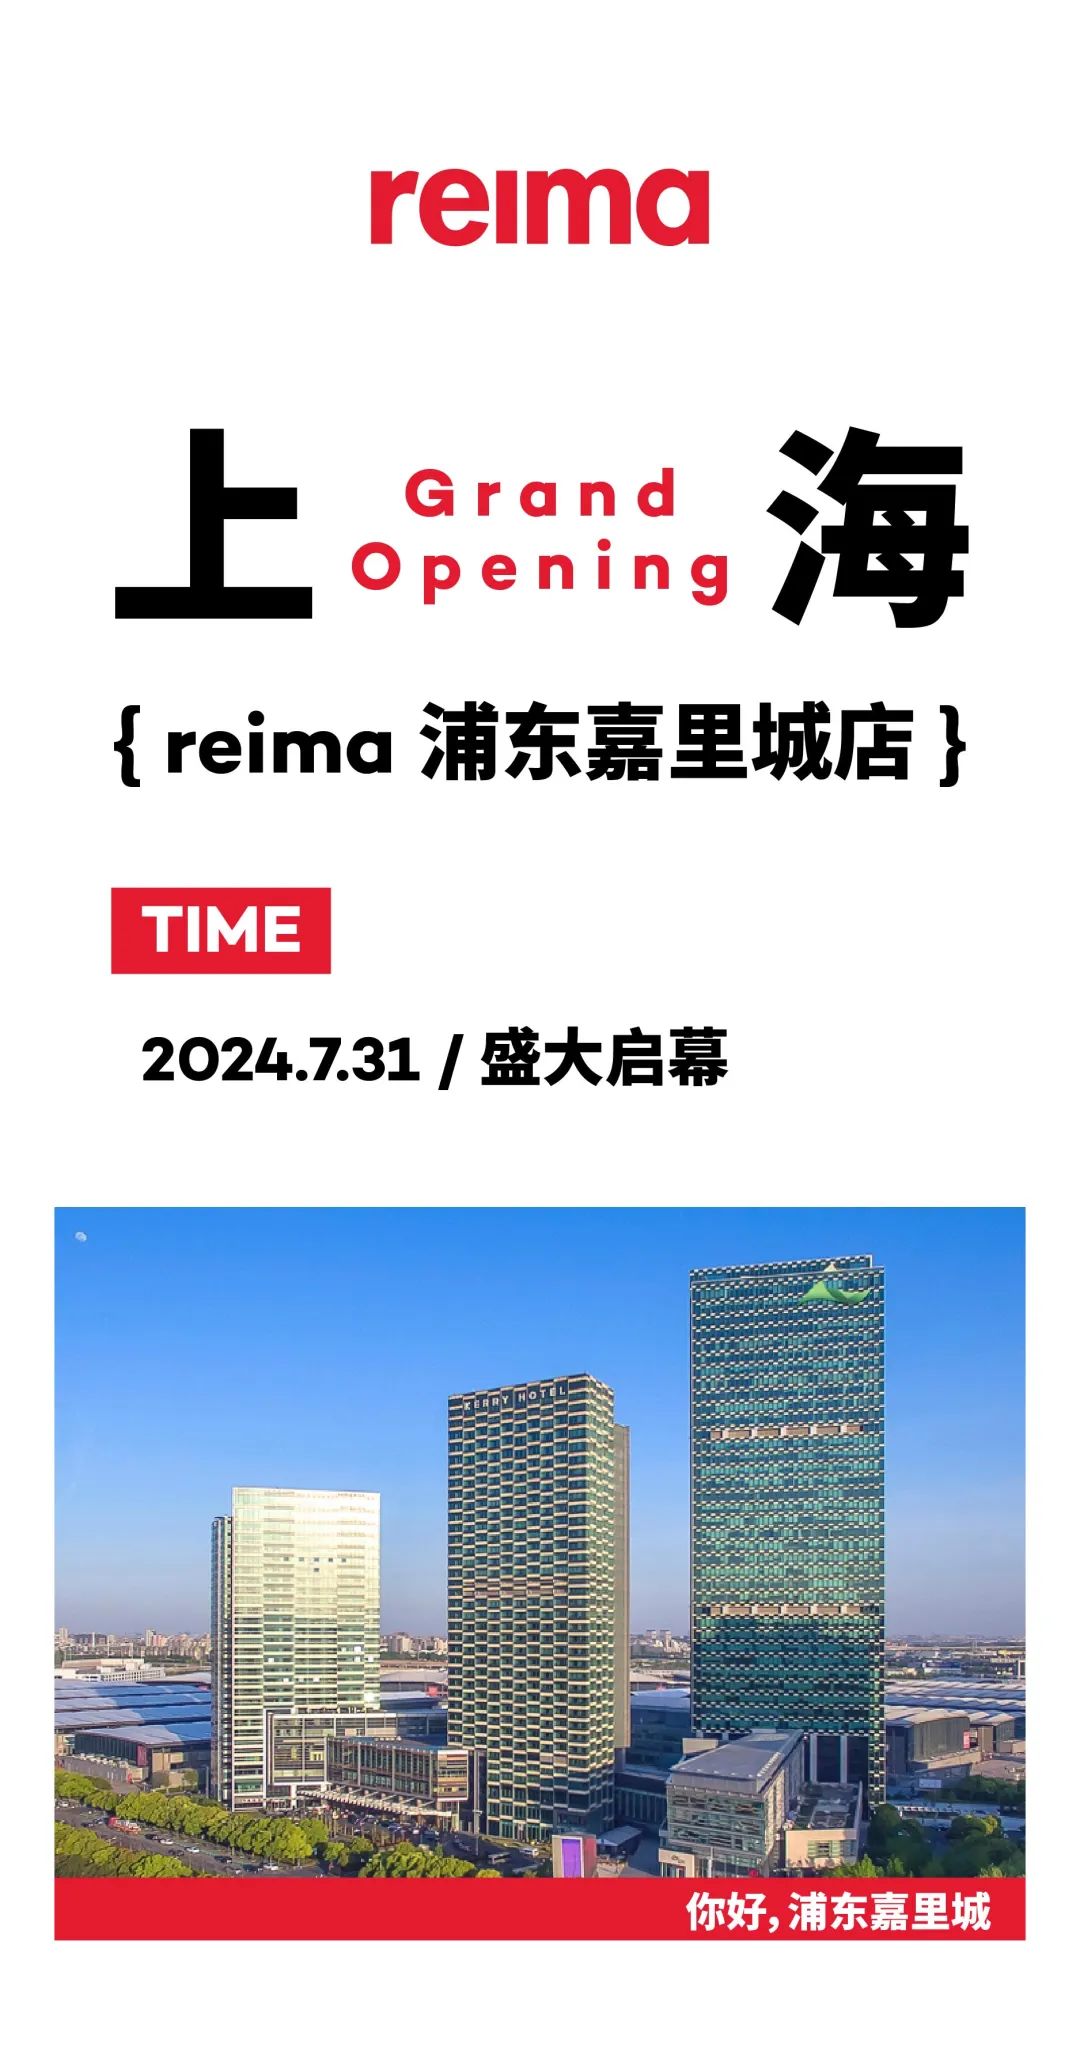 reima强势入驻上海浦东嘉里城，引领户外童装新风尚！